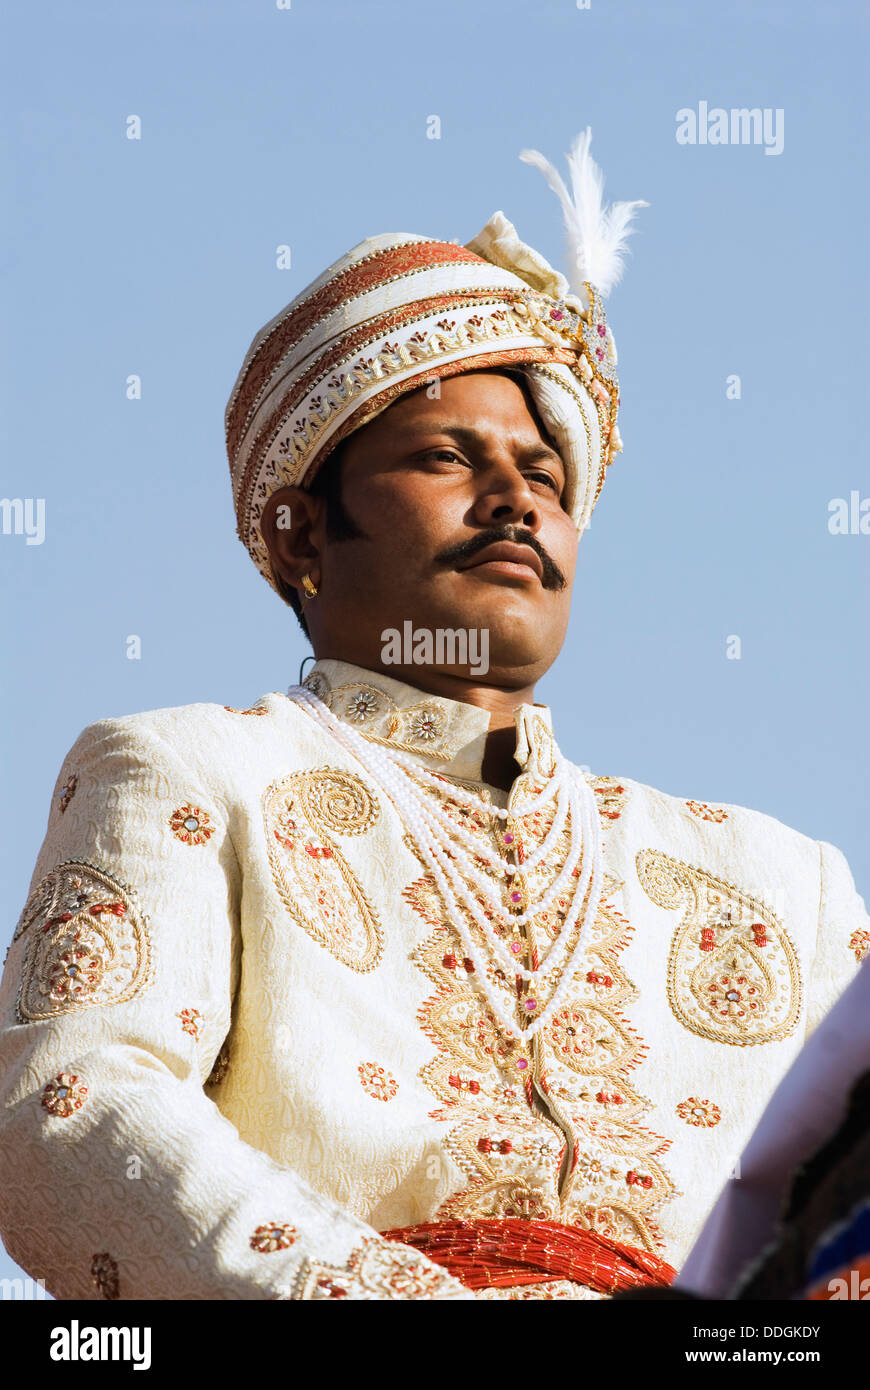 Man in traditional Rajasthani royal dress, Jaipur, Rajasthan ...